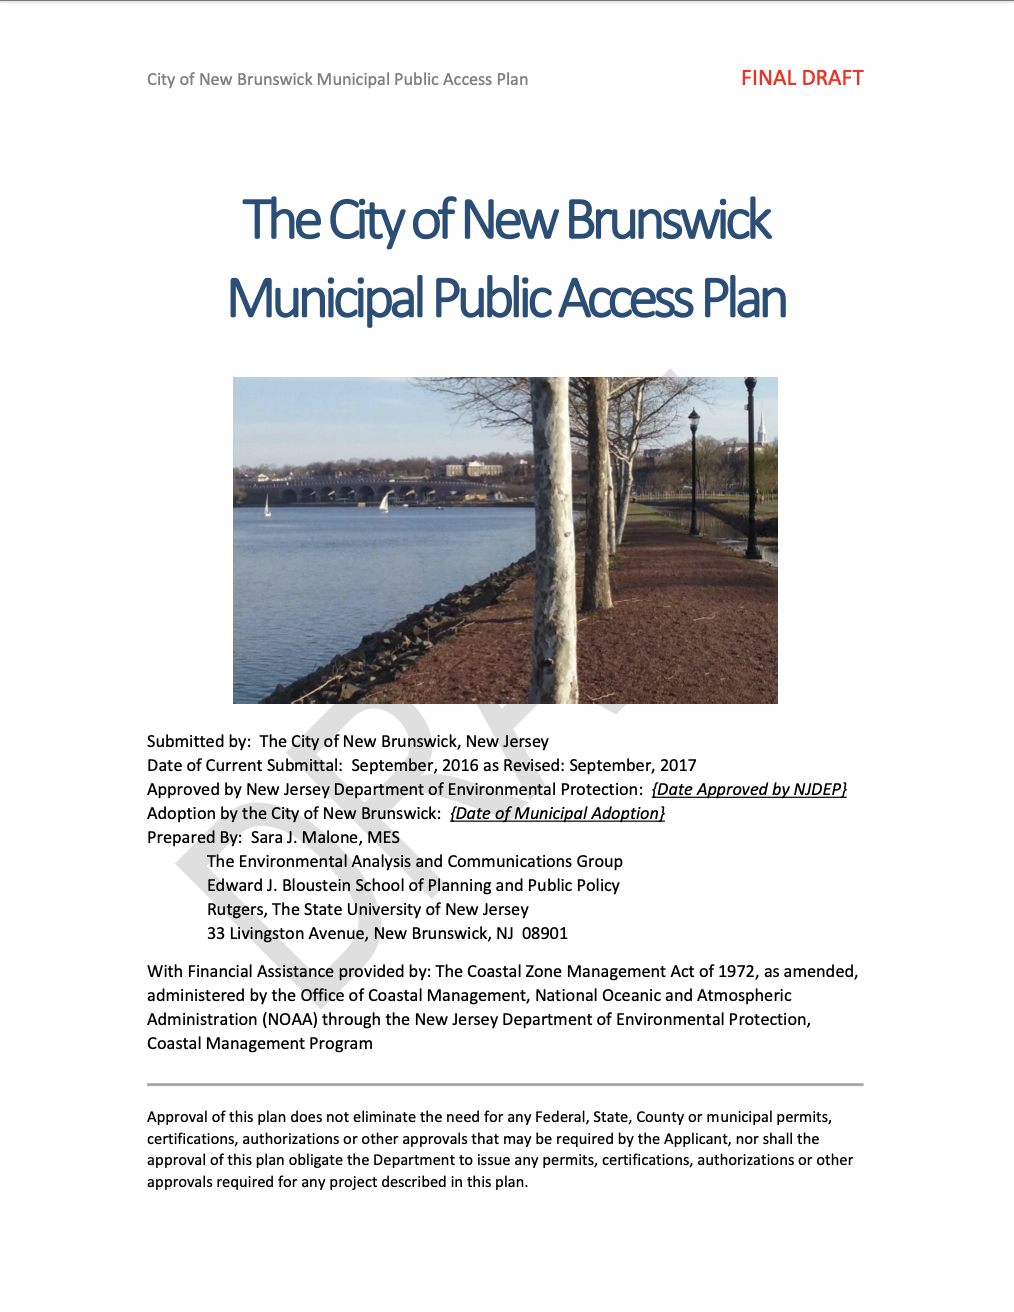 The City of New Brunswick Municipal Public Access Plan